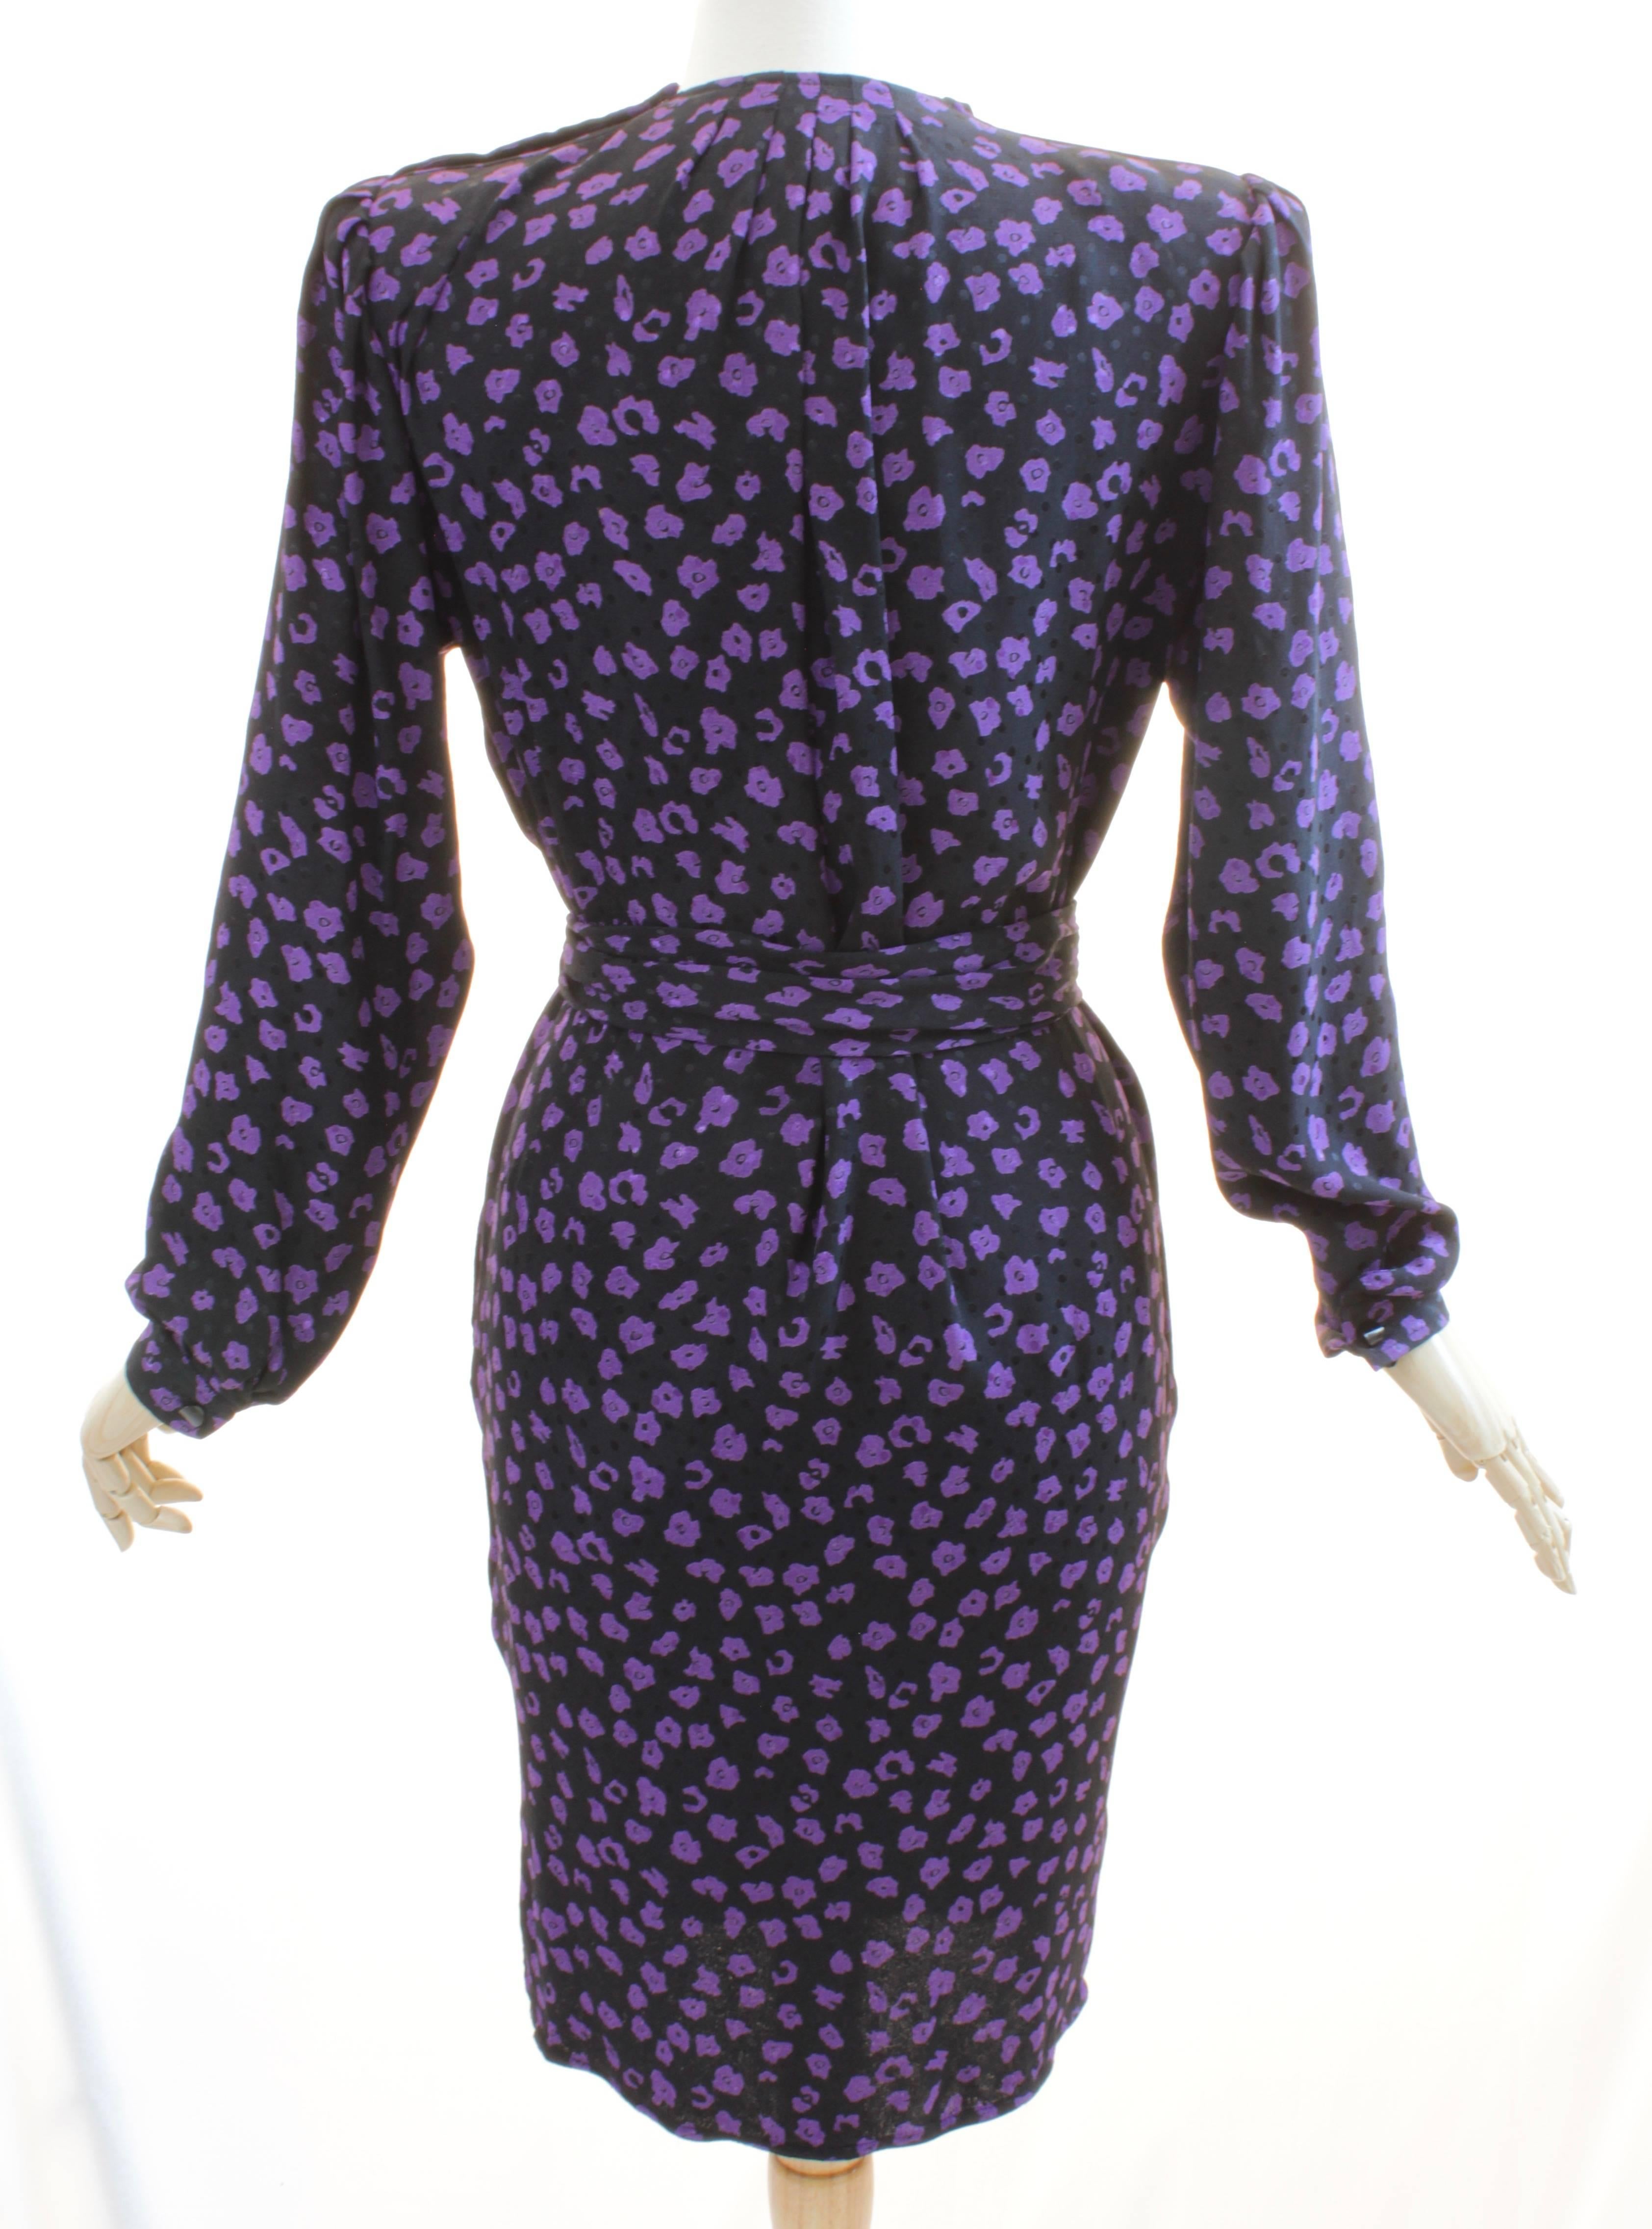 Vintage Ungaro Belted Dress Silk Jacquard Purple Floral on Black Size 10 1